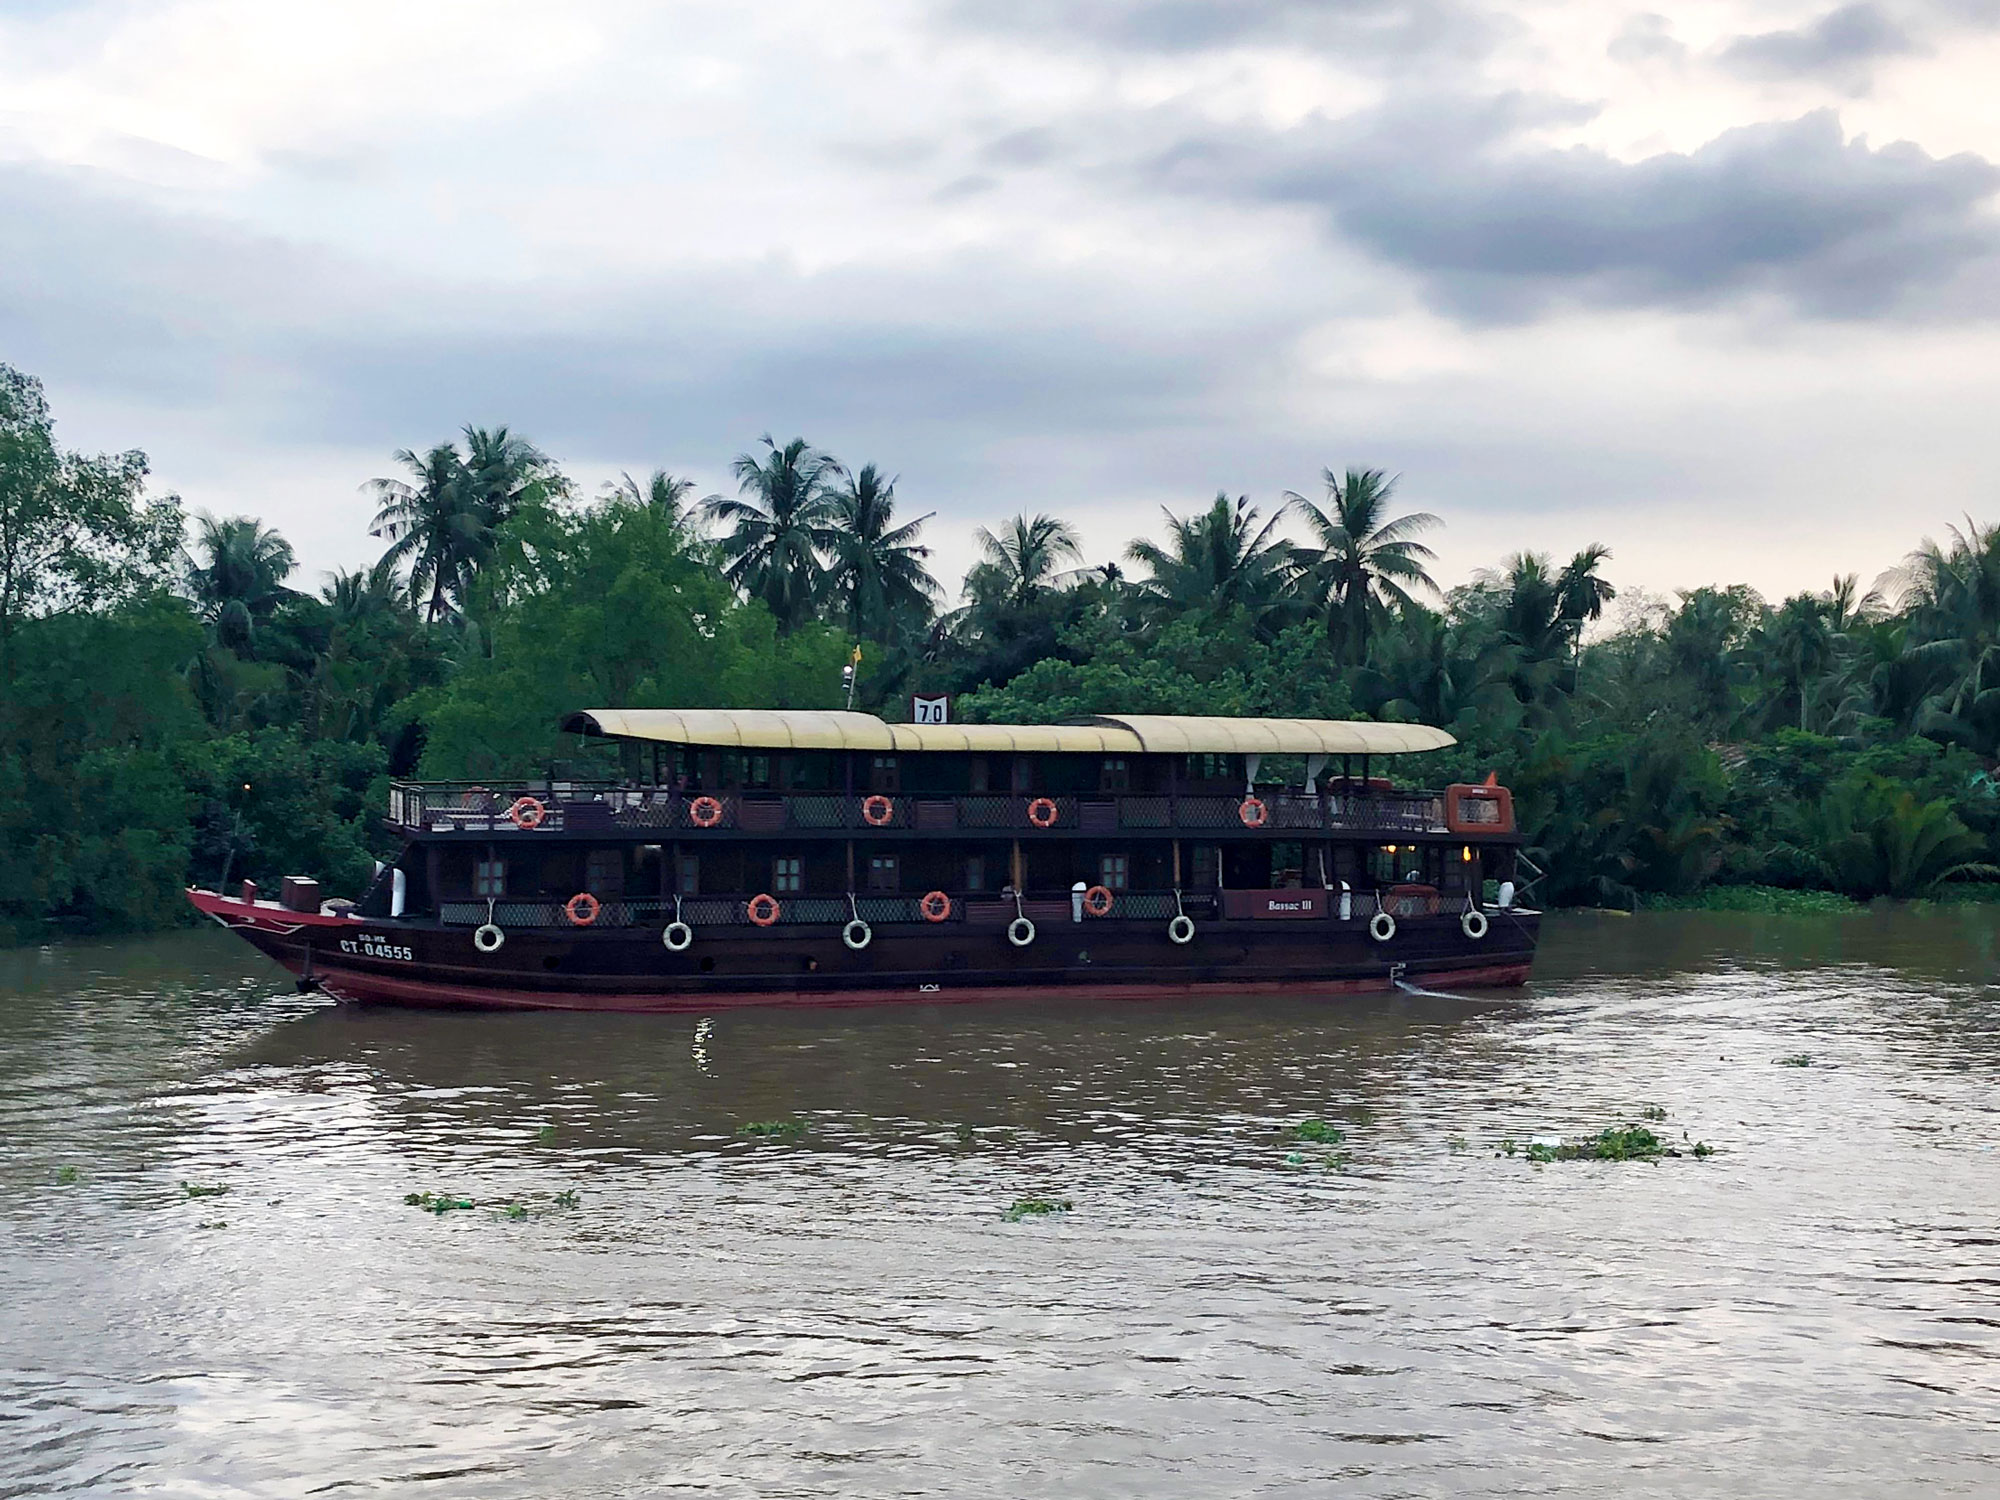 Rundrejse i Vietnam - Mekong